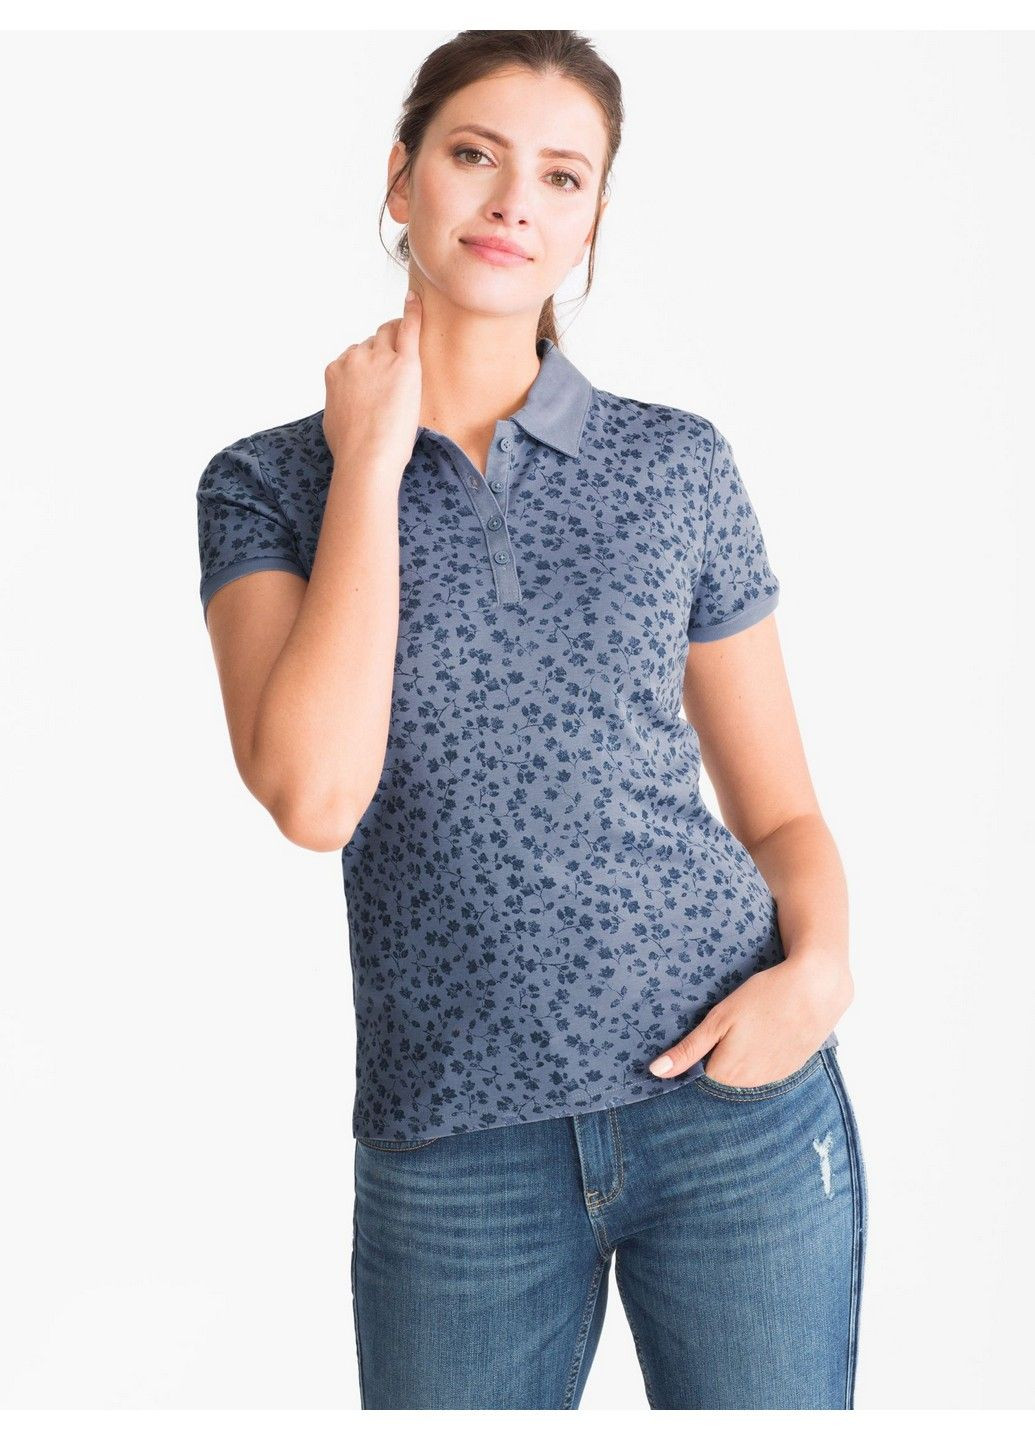 Синяя женская футболка-поло C&A с цветочным принтом